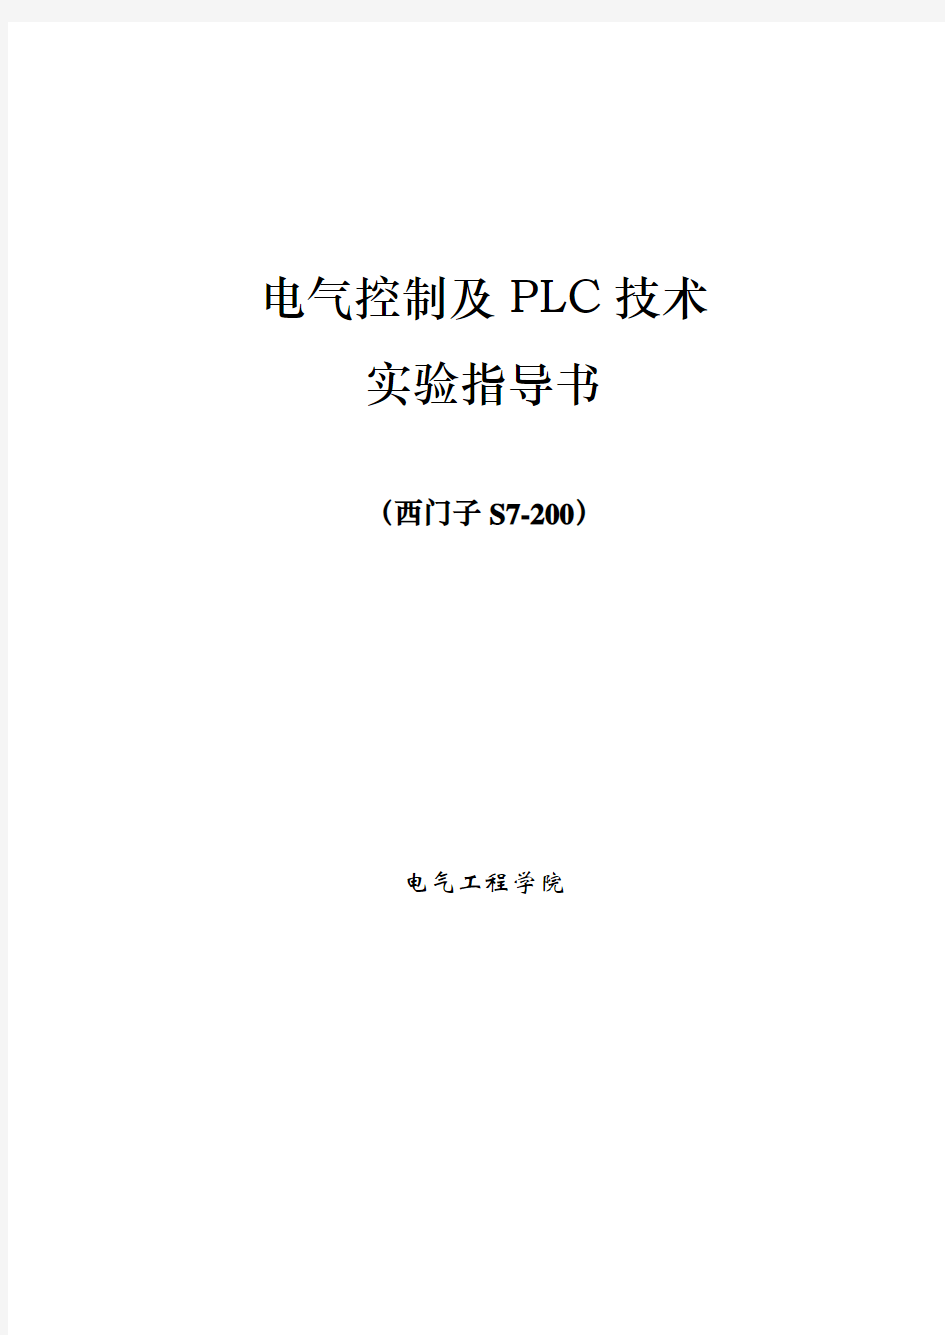 《电气控制及PLC技术》实验指导书